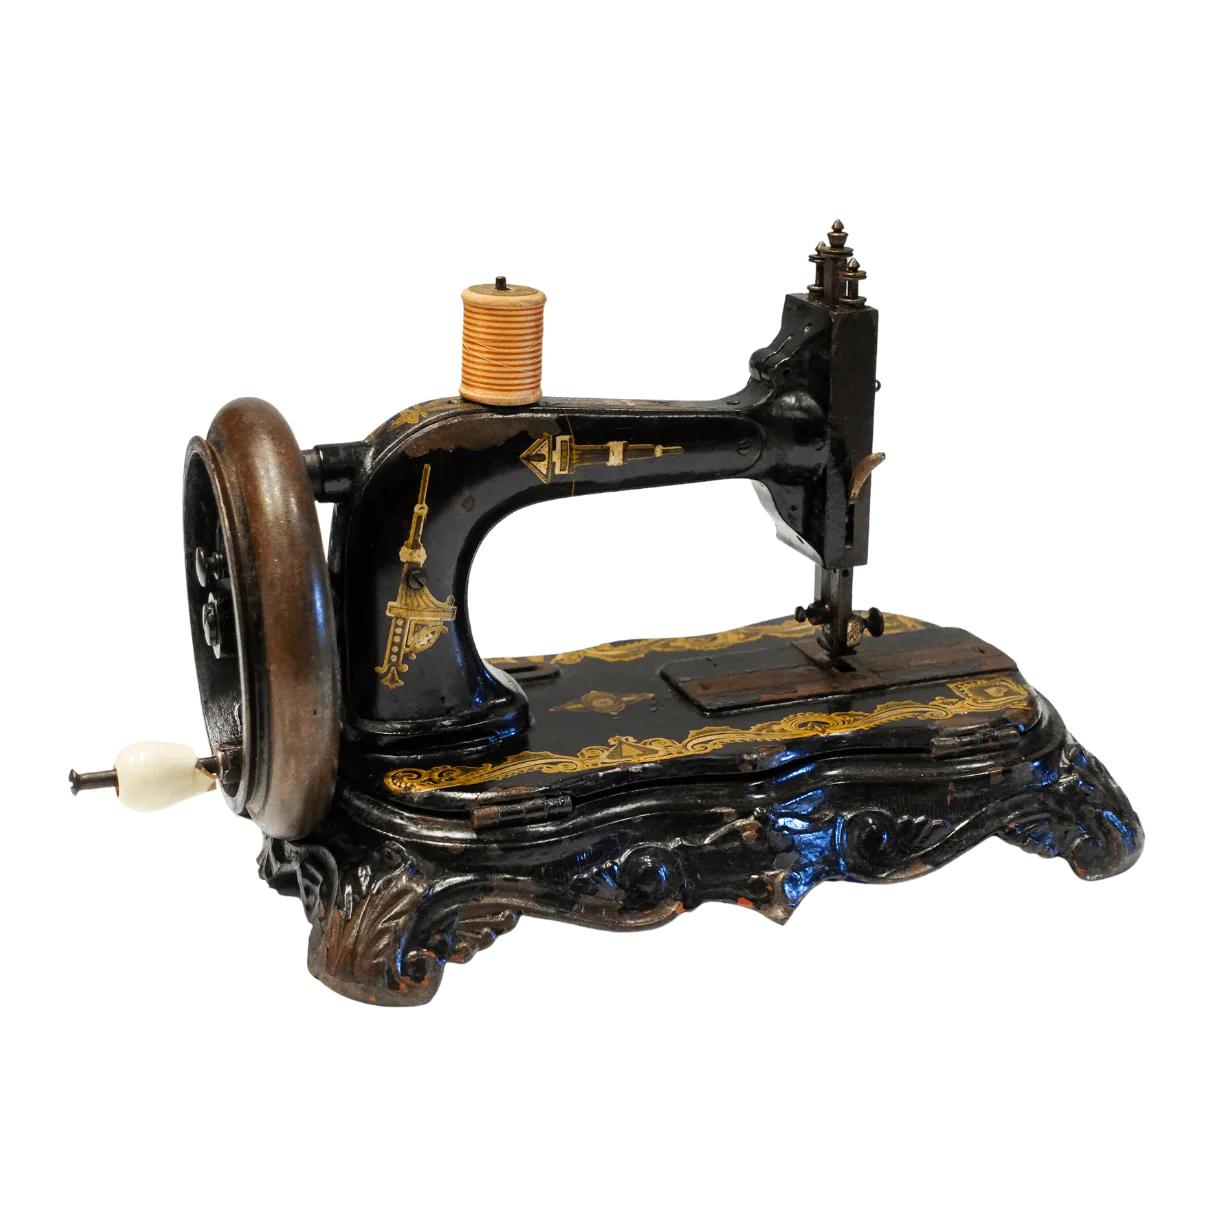 maquina de costura antiga - Qué se puede hacer con máquinas de coser antiguas